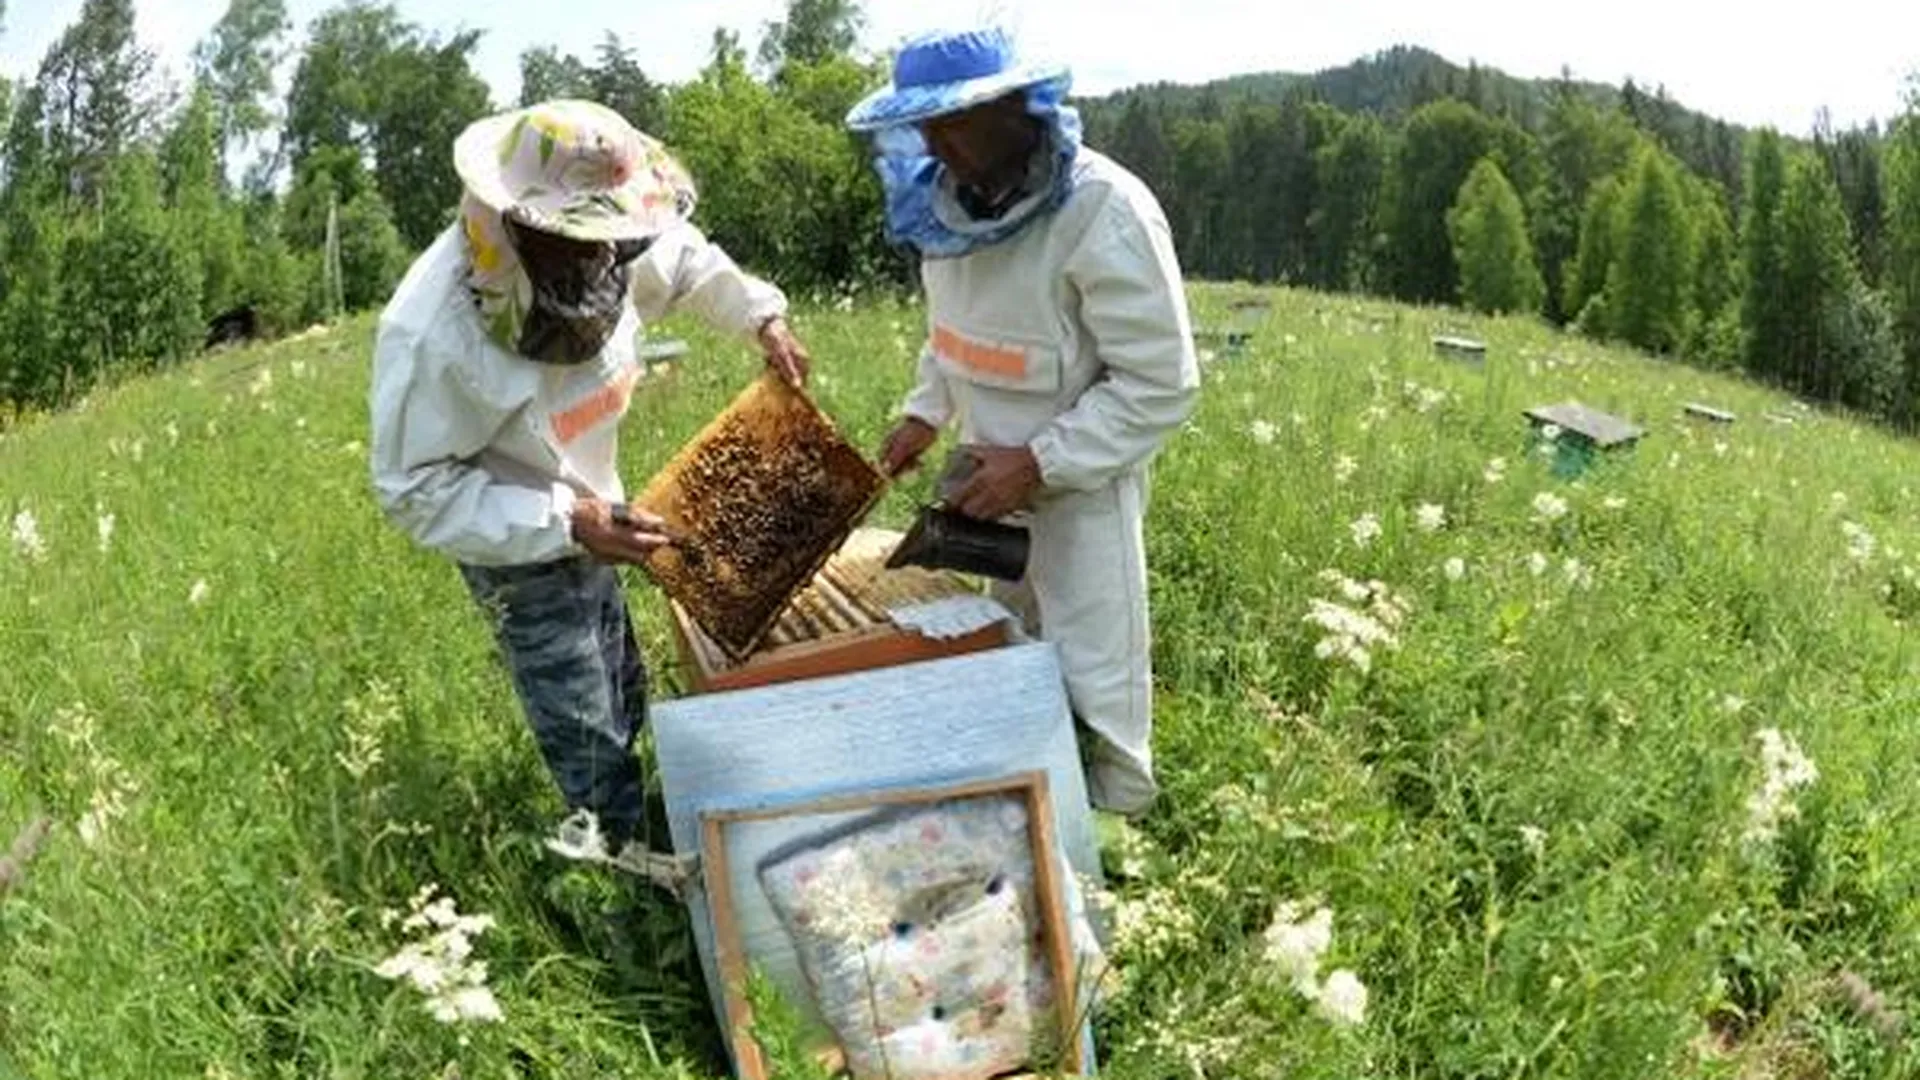 Пчелы и свиньи попадут в подмосковный стандарт СНТ